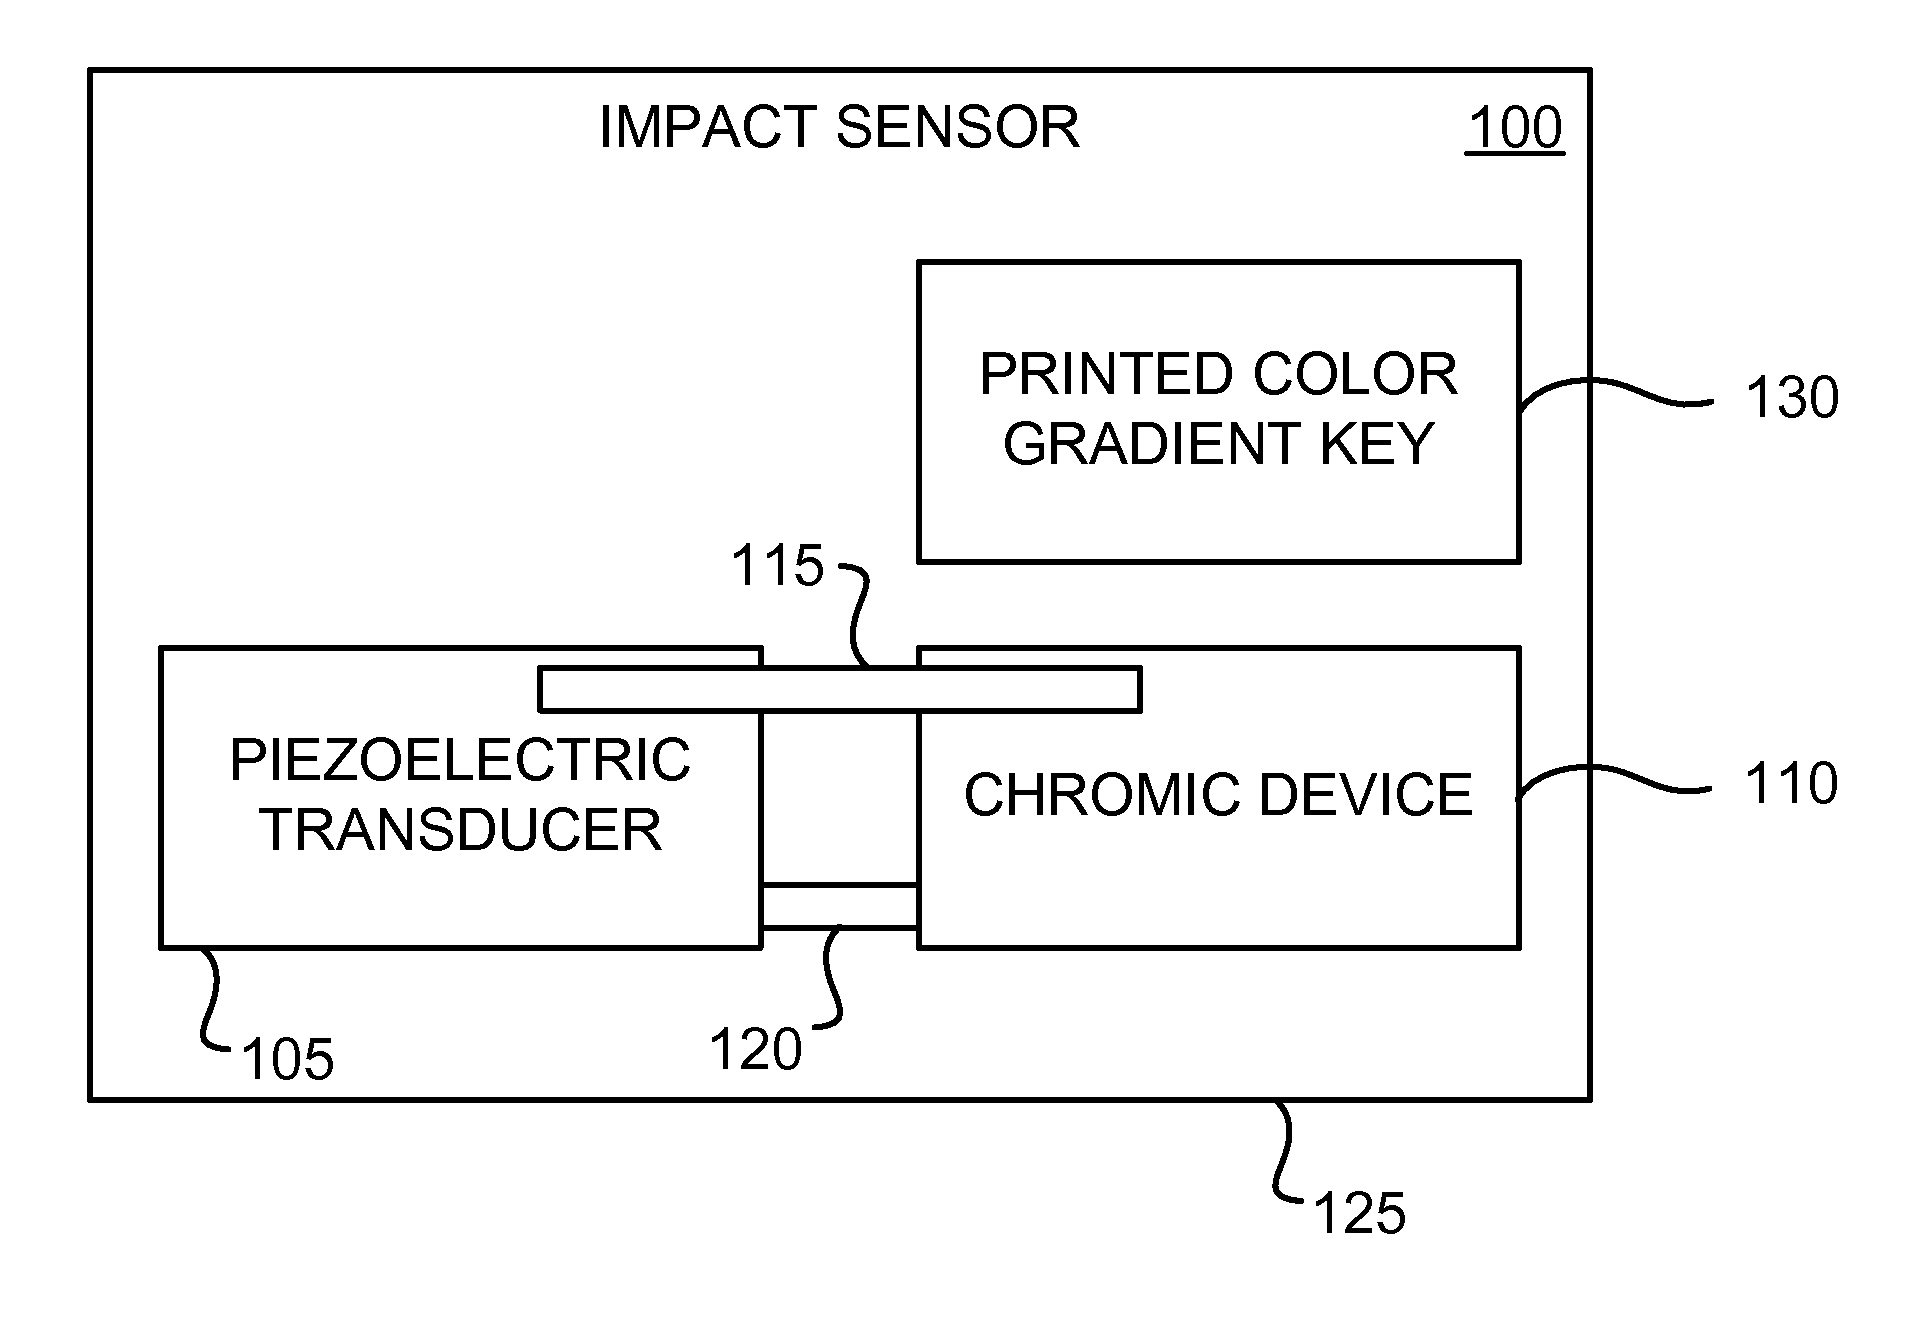 Piezoelectric chromic impact sensor